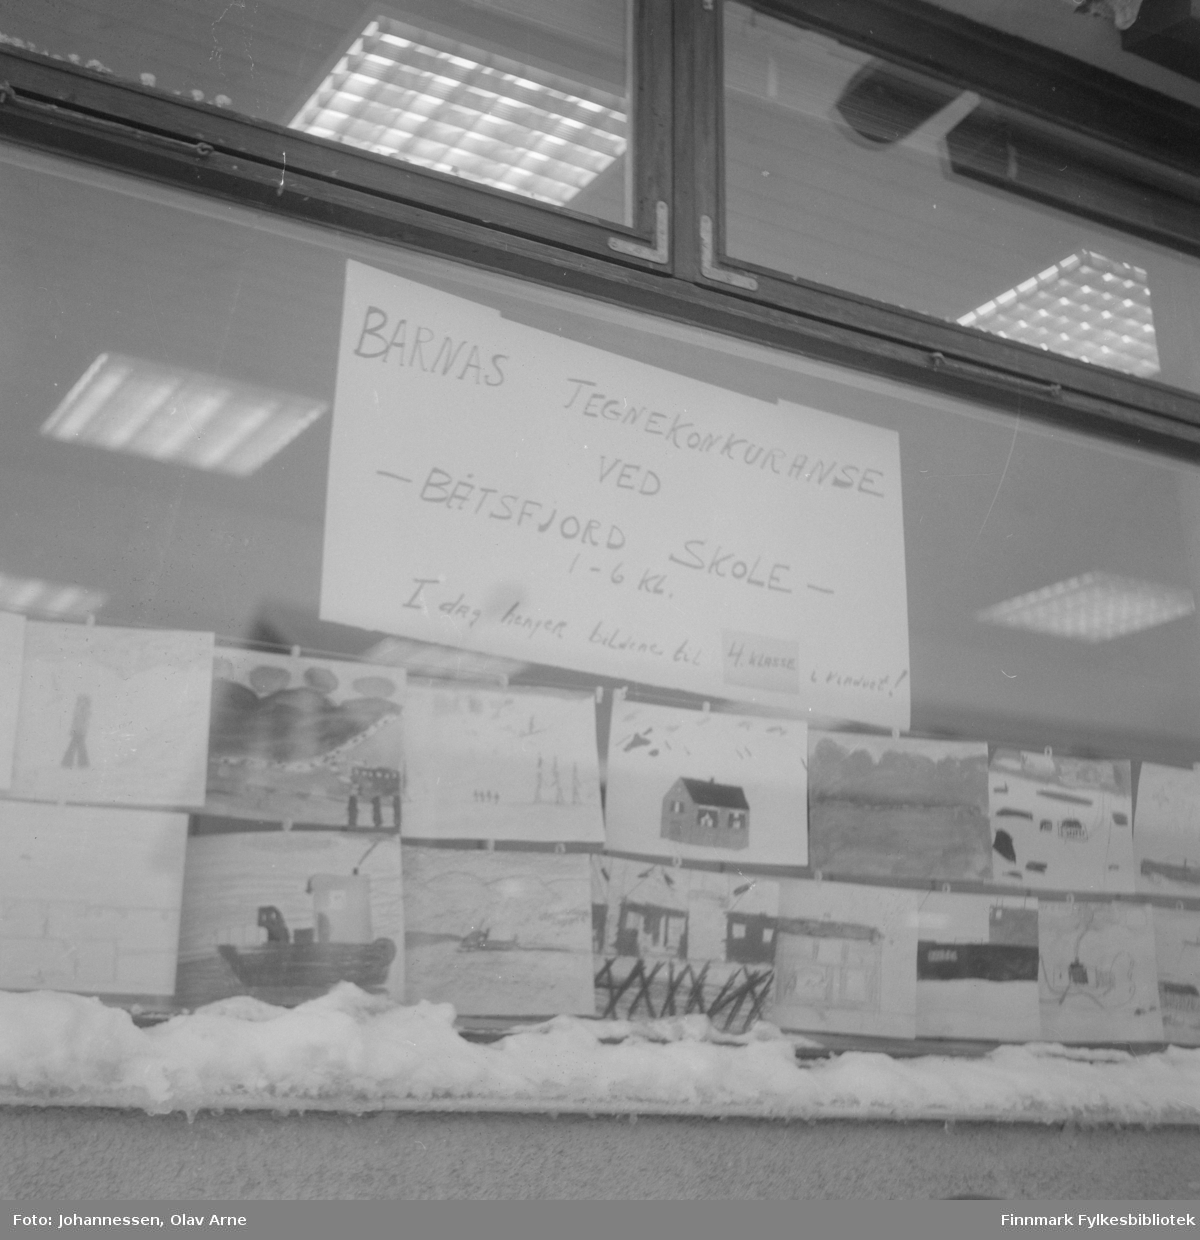 Tegnekonkurranse i Fiskernes Bank i Båtsfjord, Hindberggata 19

På plakaten står det skrevet: Barnas tegnekonkuranse ved Båtsfjord skole 1 - 6 kl. I dag henger bildene til 4. klasse i vinduet!